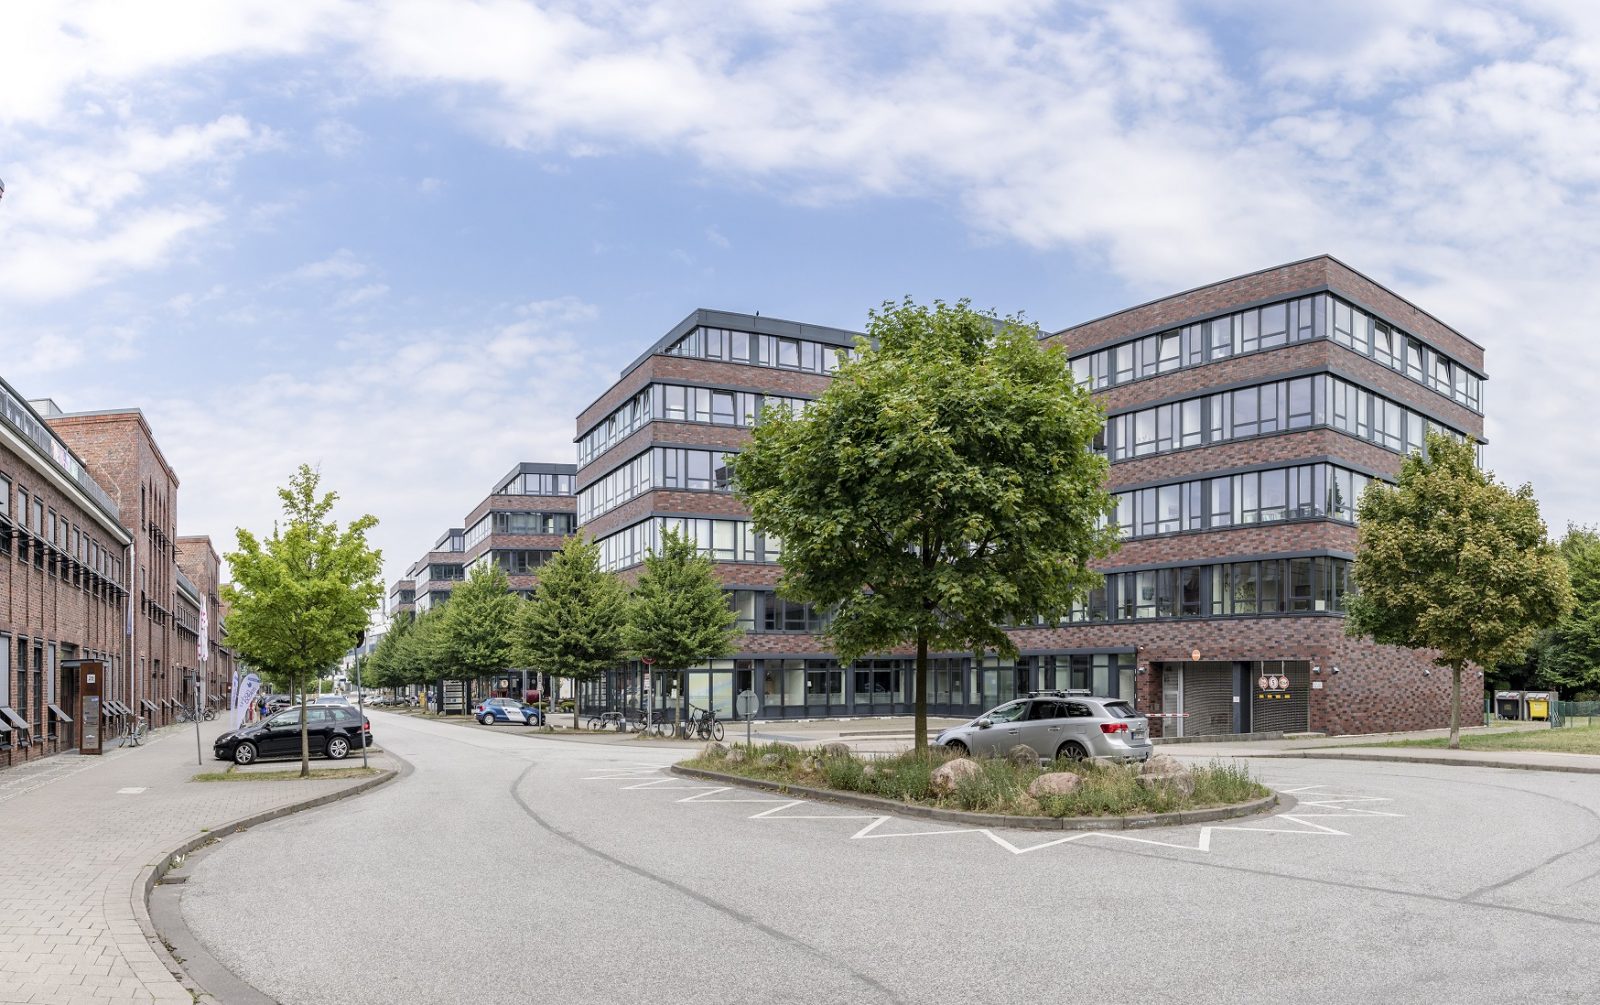 Covivio vermietet 1.100 m² an Kindertagesstätte in Hamburg-Eppendorf